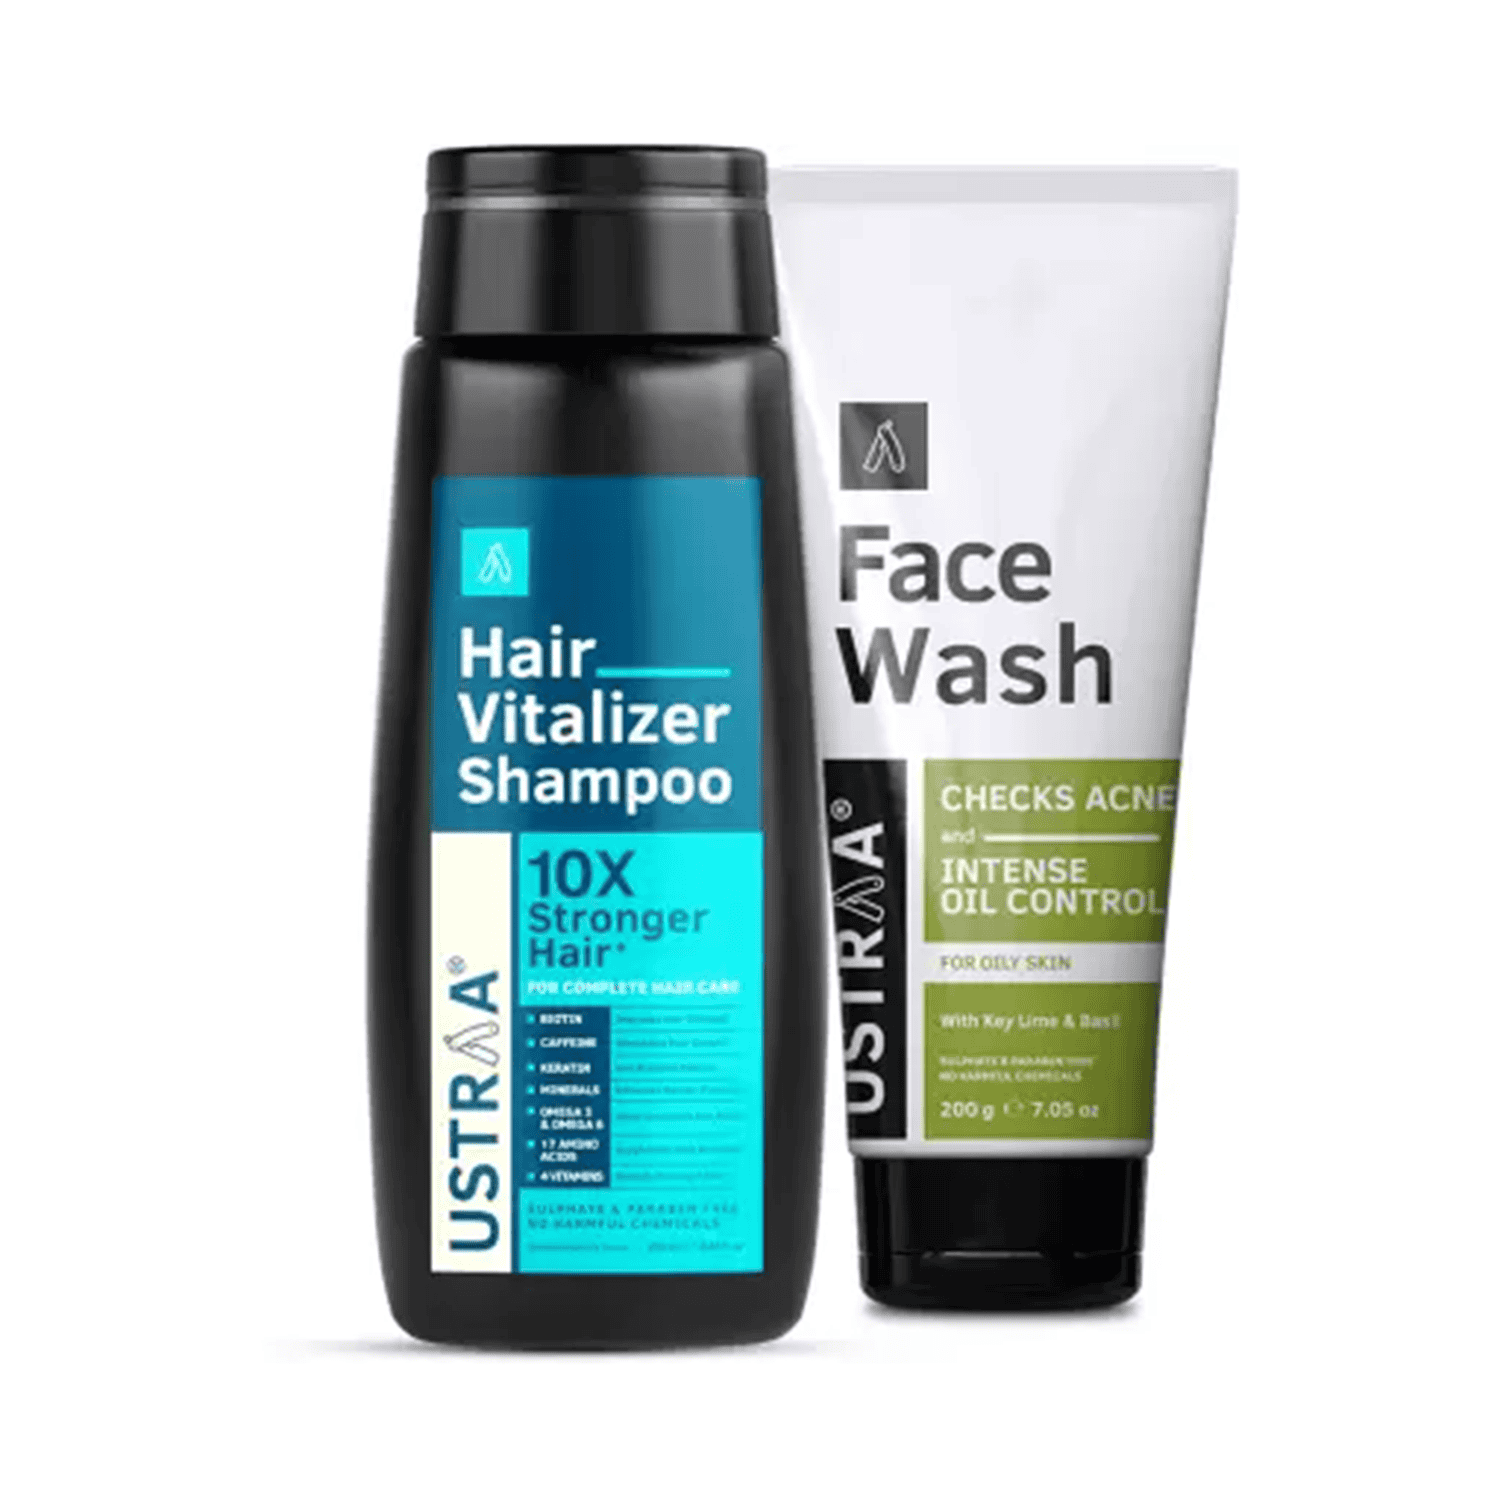 Ustraa | Ustraa Hair Vitalizer Shampoo & Face Wash Oily Skin Combo